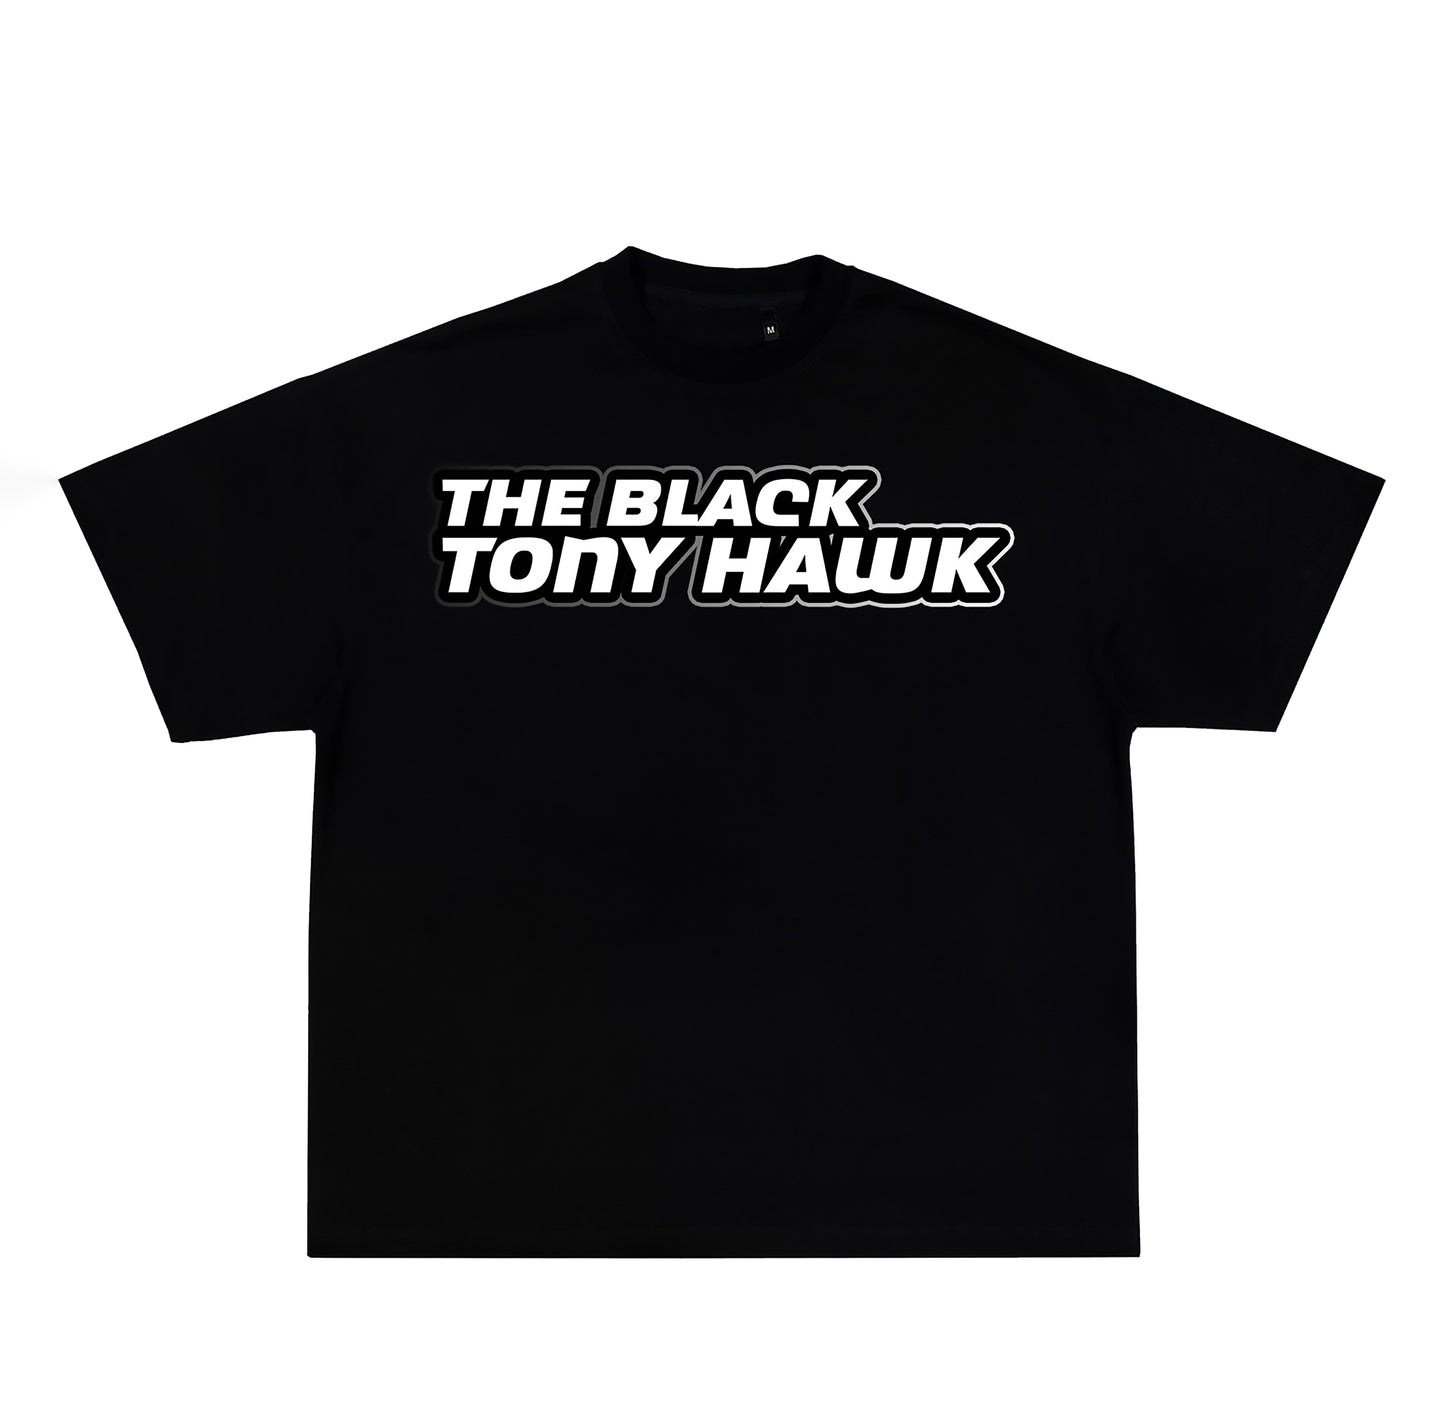 The Black Tony Hawk Tee